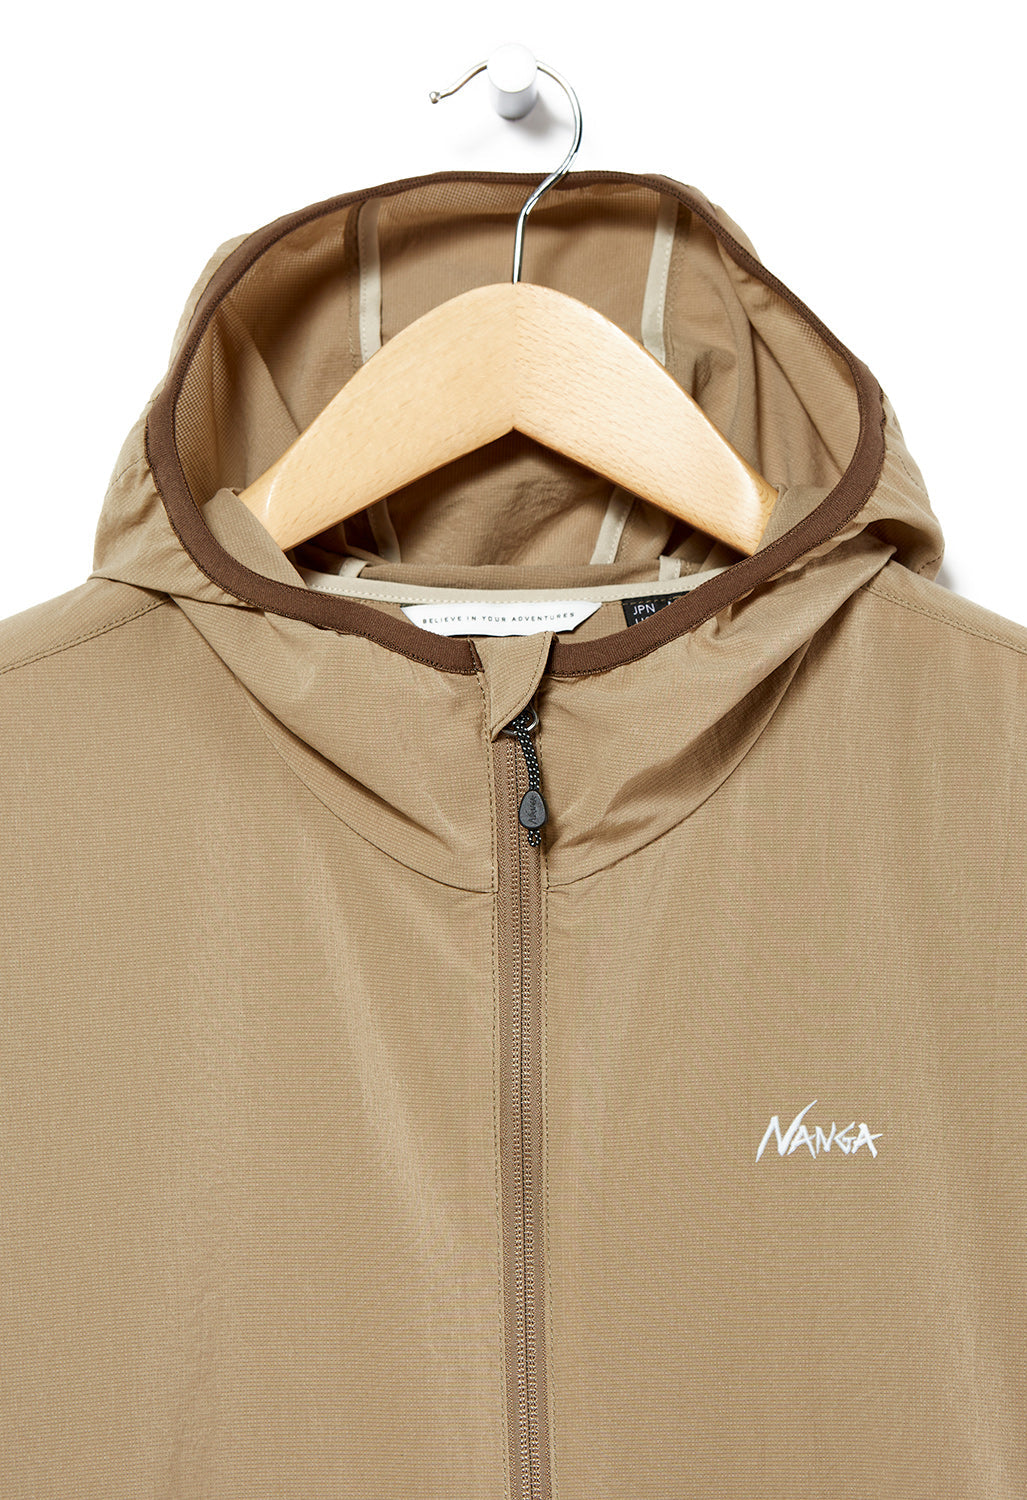 Nanga Men's Air Cloth Comfy Zip Parka Jacket - Beige